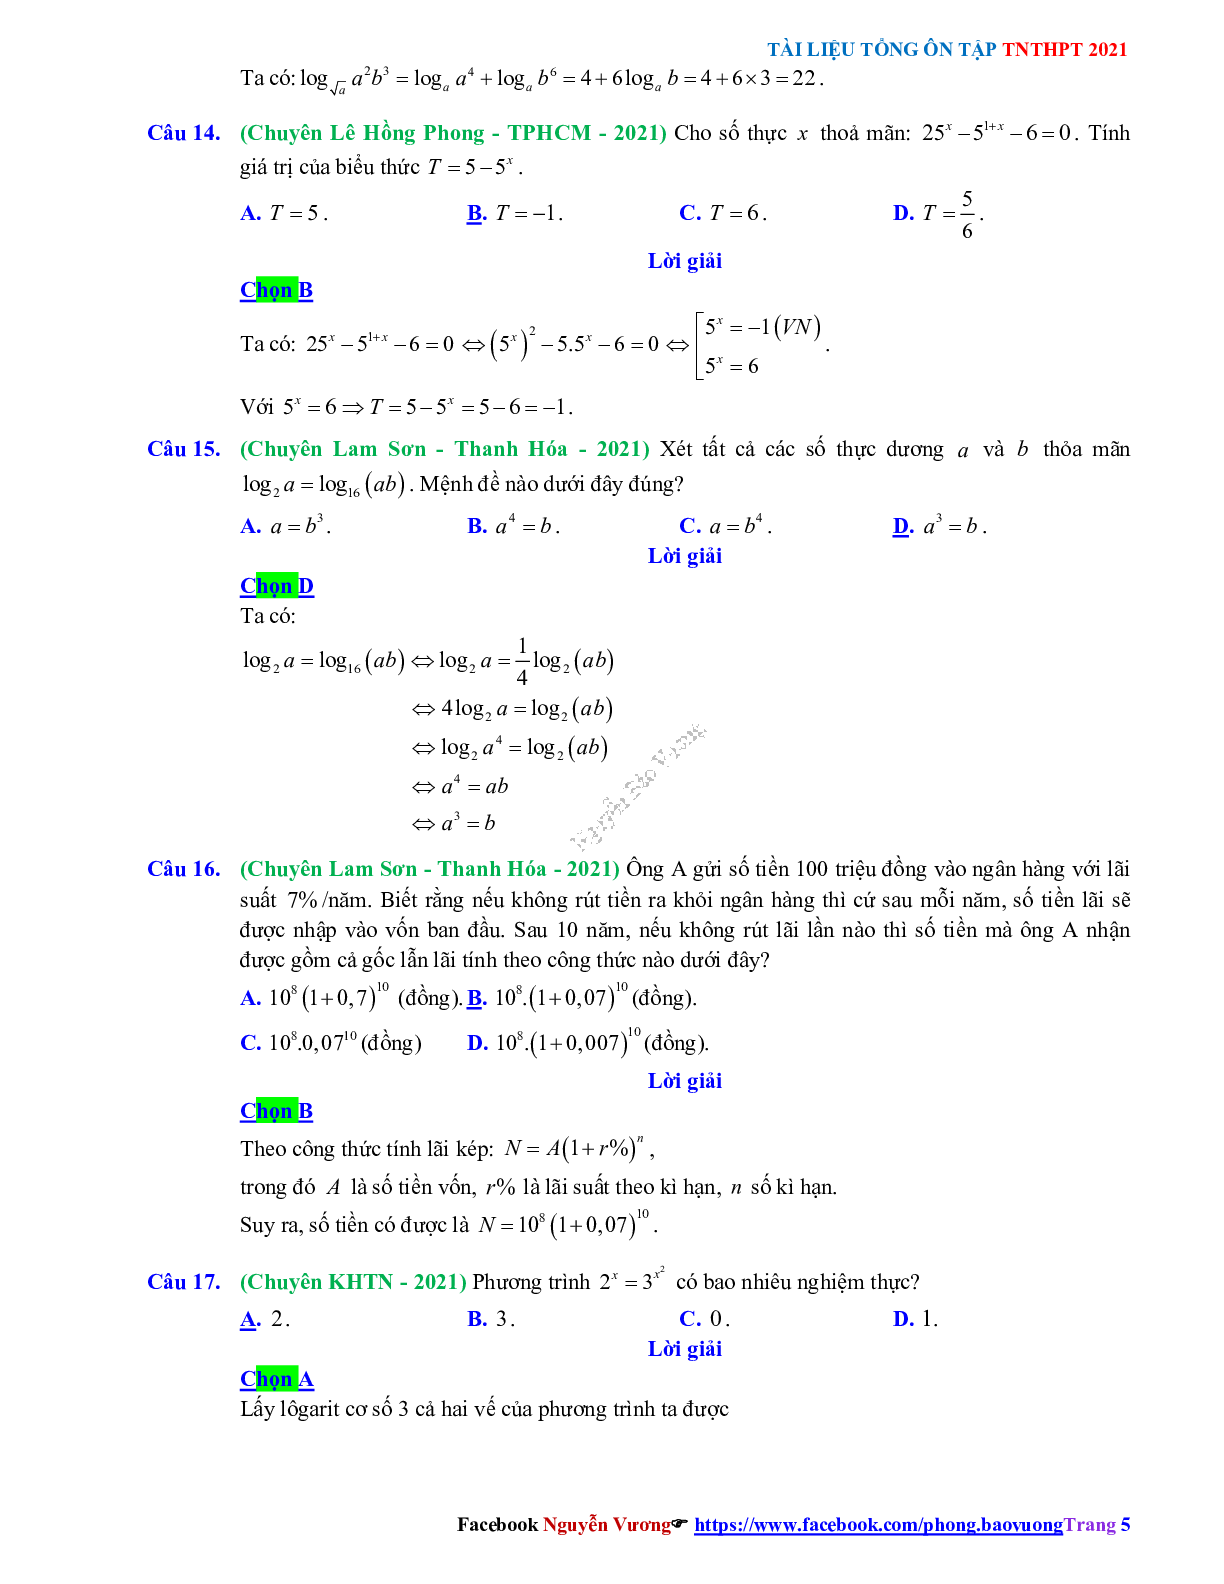 Trắc nghiệm Ôn thi THPT QG Toán 12: Đáp án mũ - lũy thừa - logarit mức độ thông hiểu (trang 5)